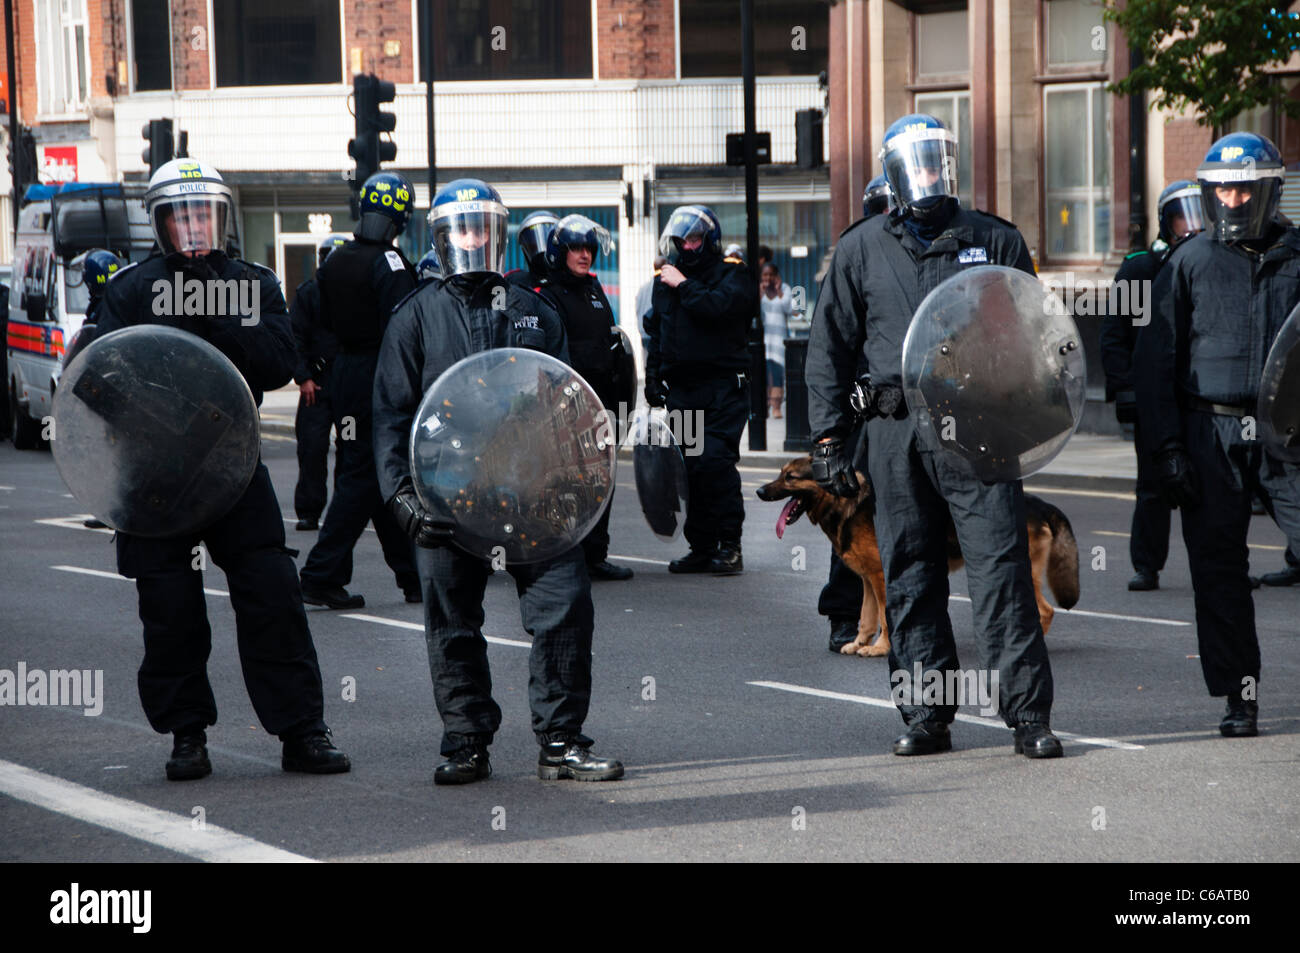 La policía antidisturbios con cascos y escudos antidisturbios y un perro alsaciano en Mare street Hackney durante el 8 de agosto de 2011 motín Foto de stock